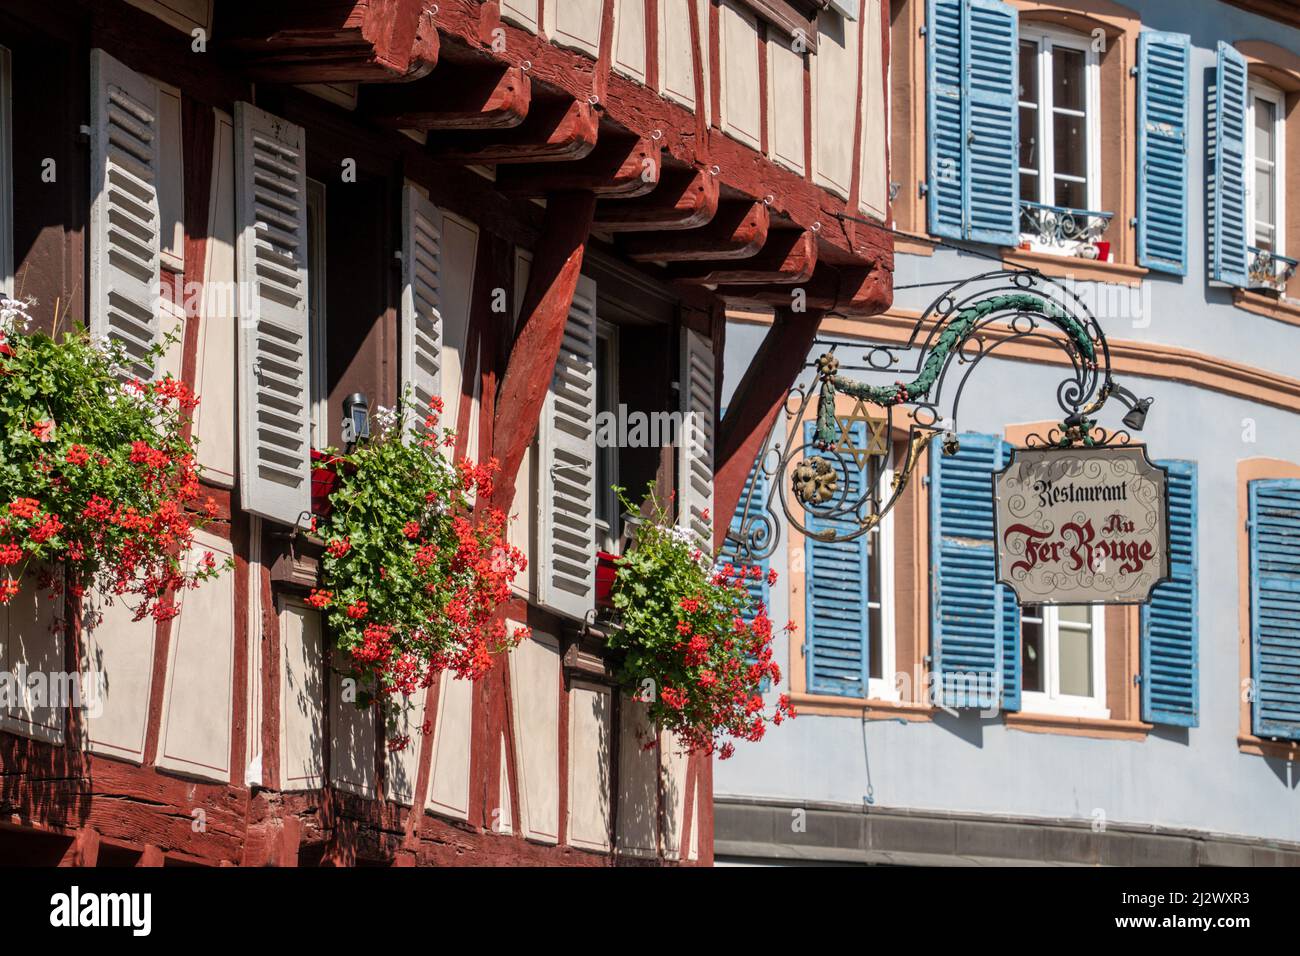 Maisons à colombages de la petite Venise, panneau Restaurant fer Rouge, Colmar, Alsace, France, Europe Banque D'Images